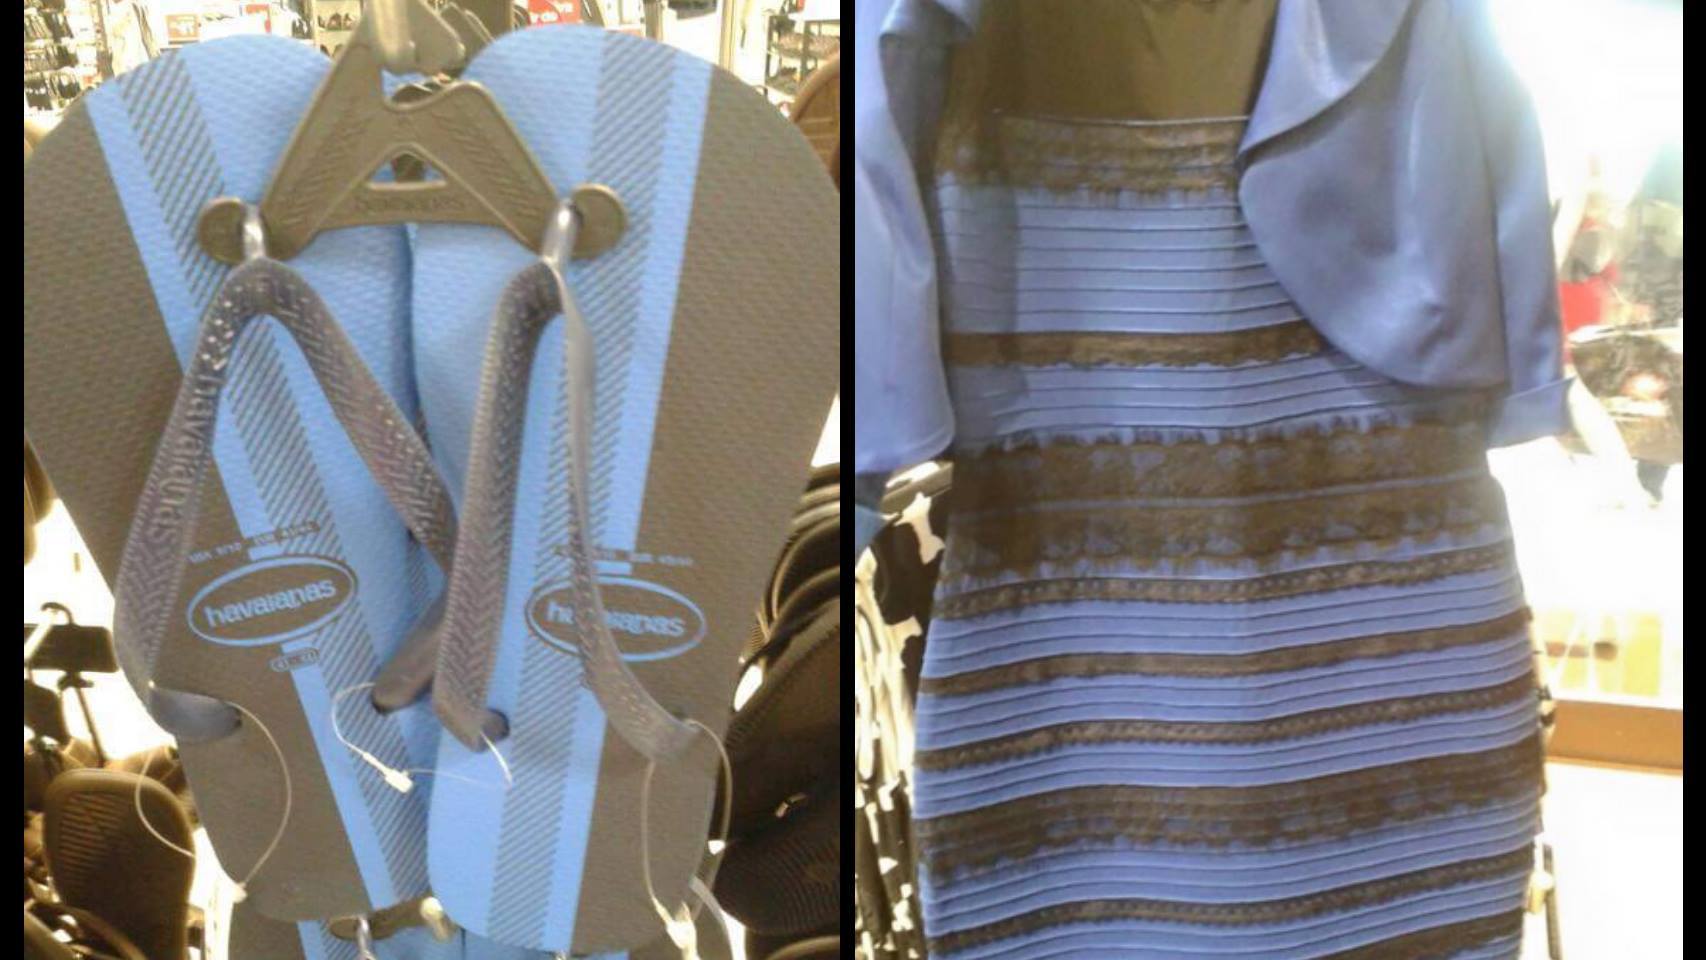 Las chanclas y el vestido que cada uno ve de un color distinto.